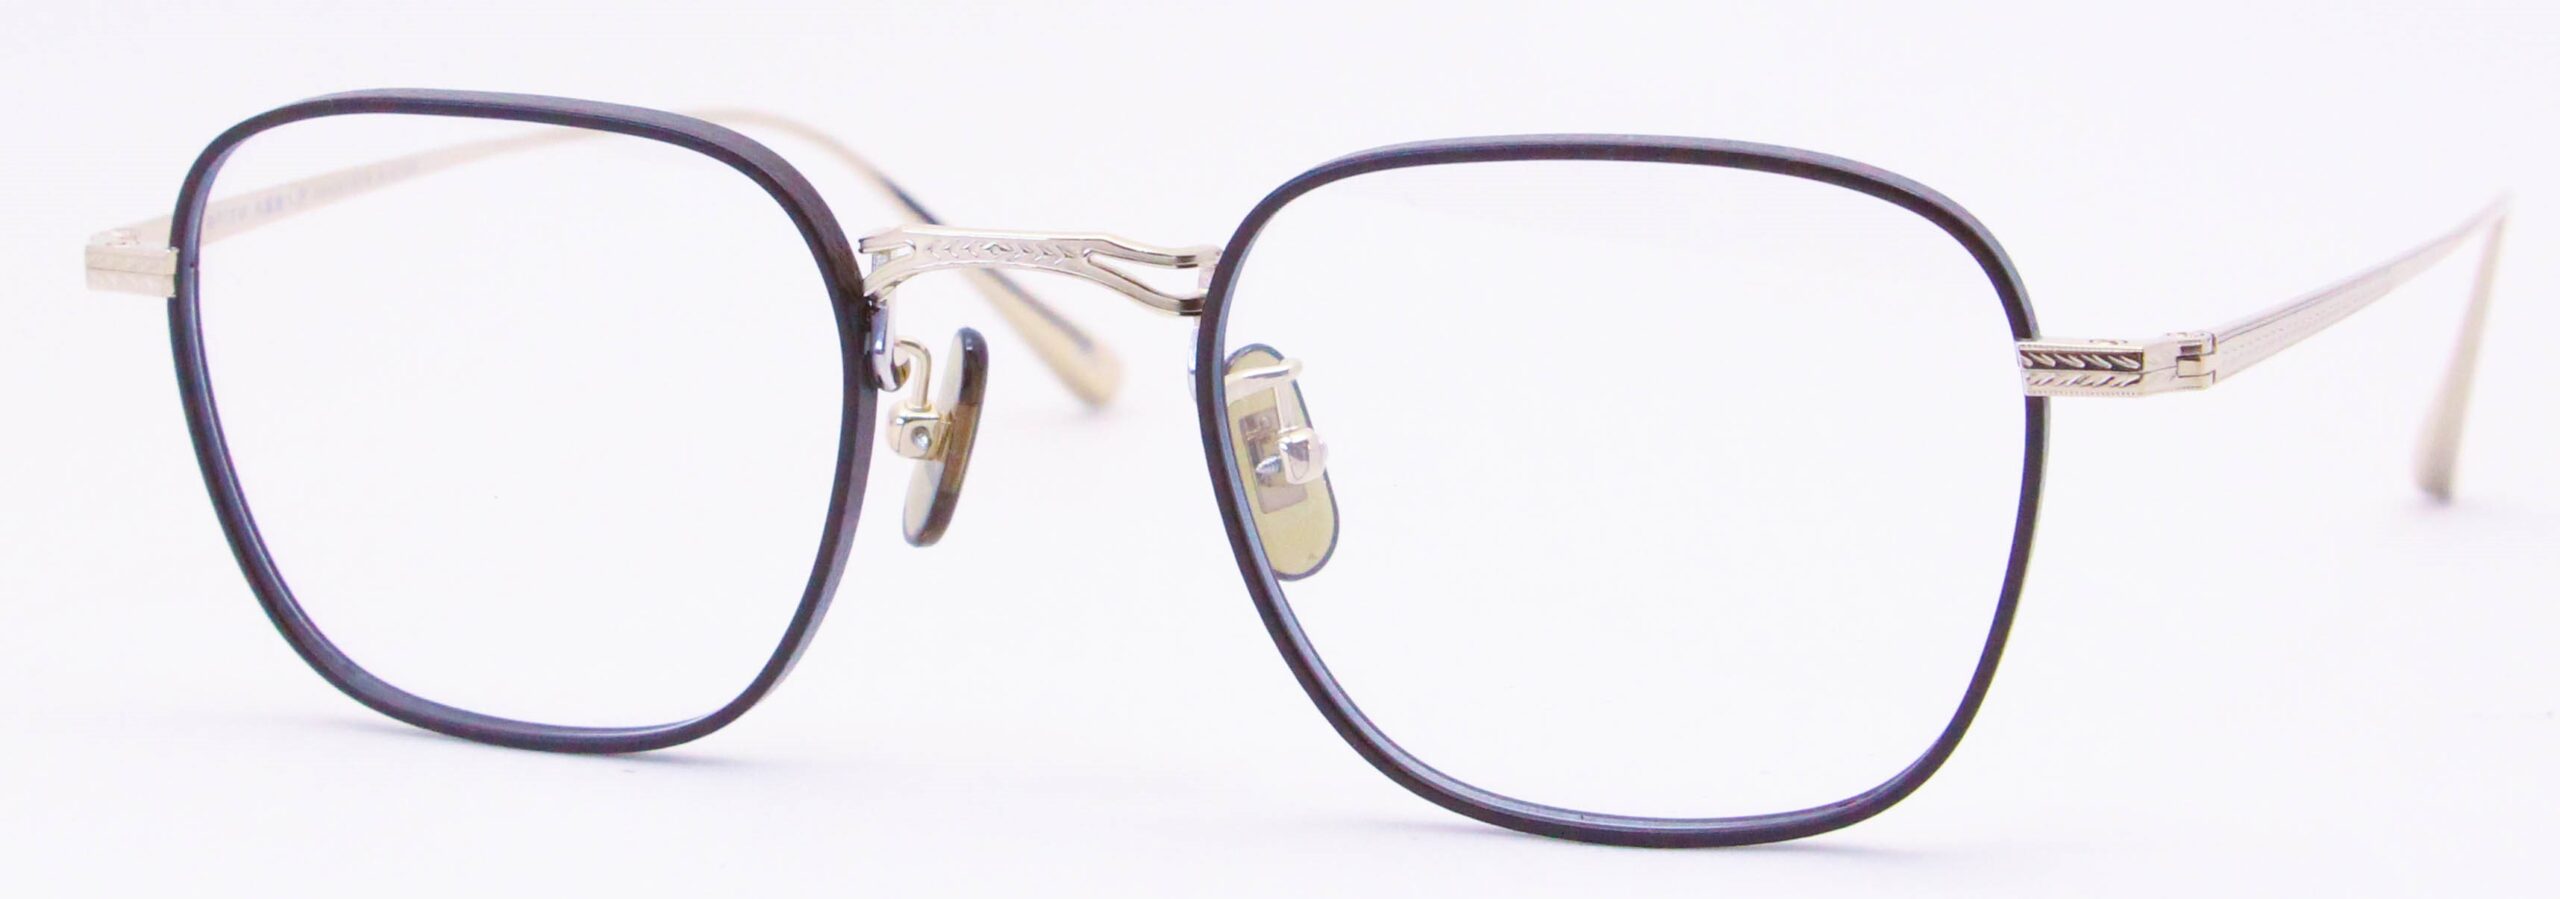 眼鏡のカラータイプC-3 Brown-Matt/Gold